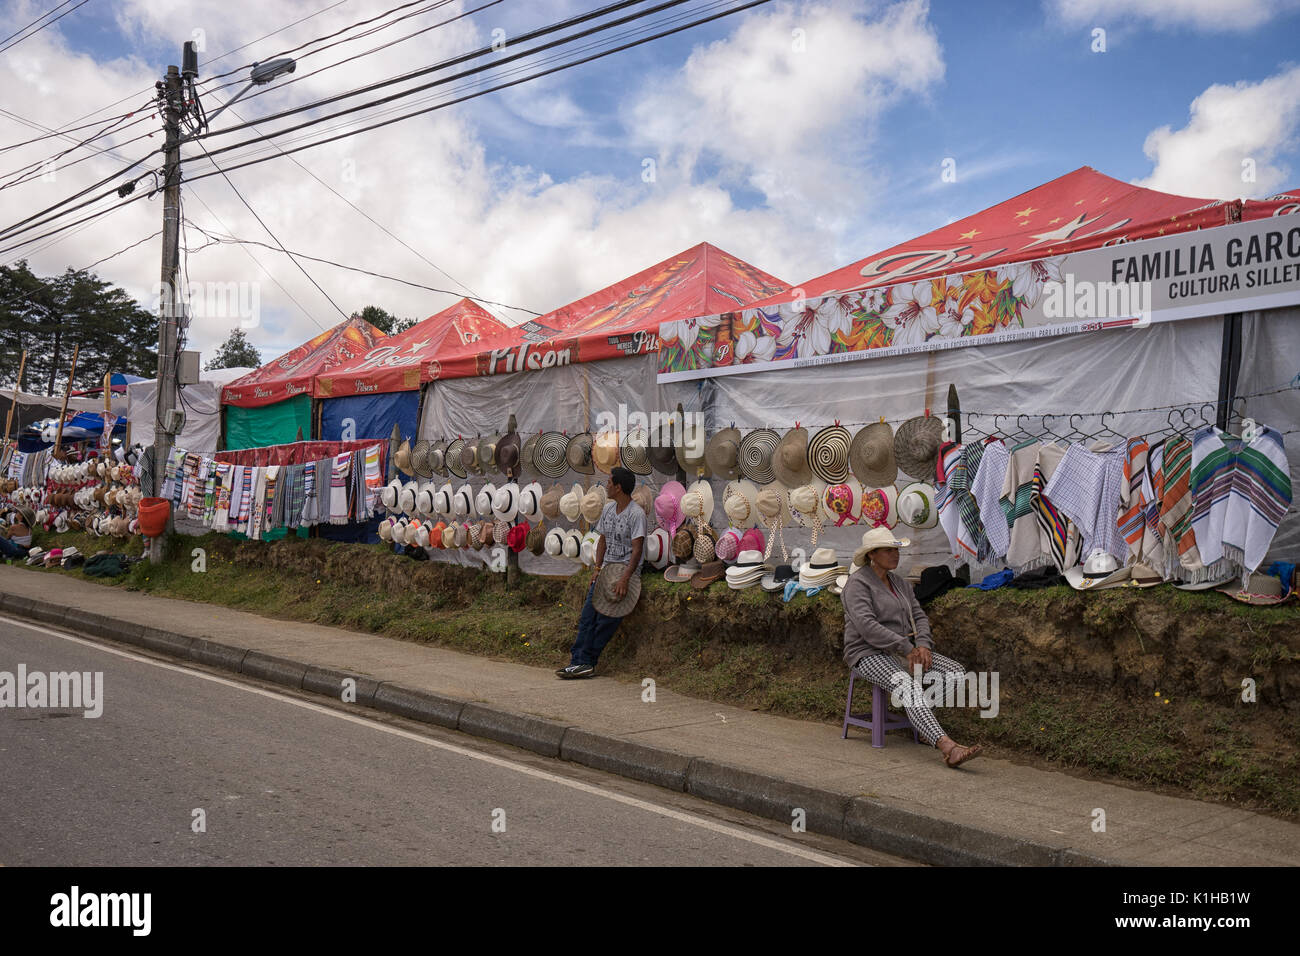 August 5, 2017 Medellin, Kolumbien: Hüte und Ponchos auf einem Zaun durch Verkäufer am Flower Festival verlängertes Wochenende aufgehängt Stockfoto